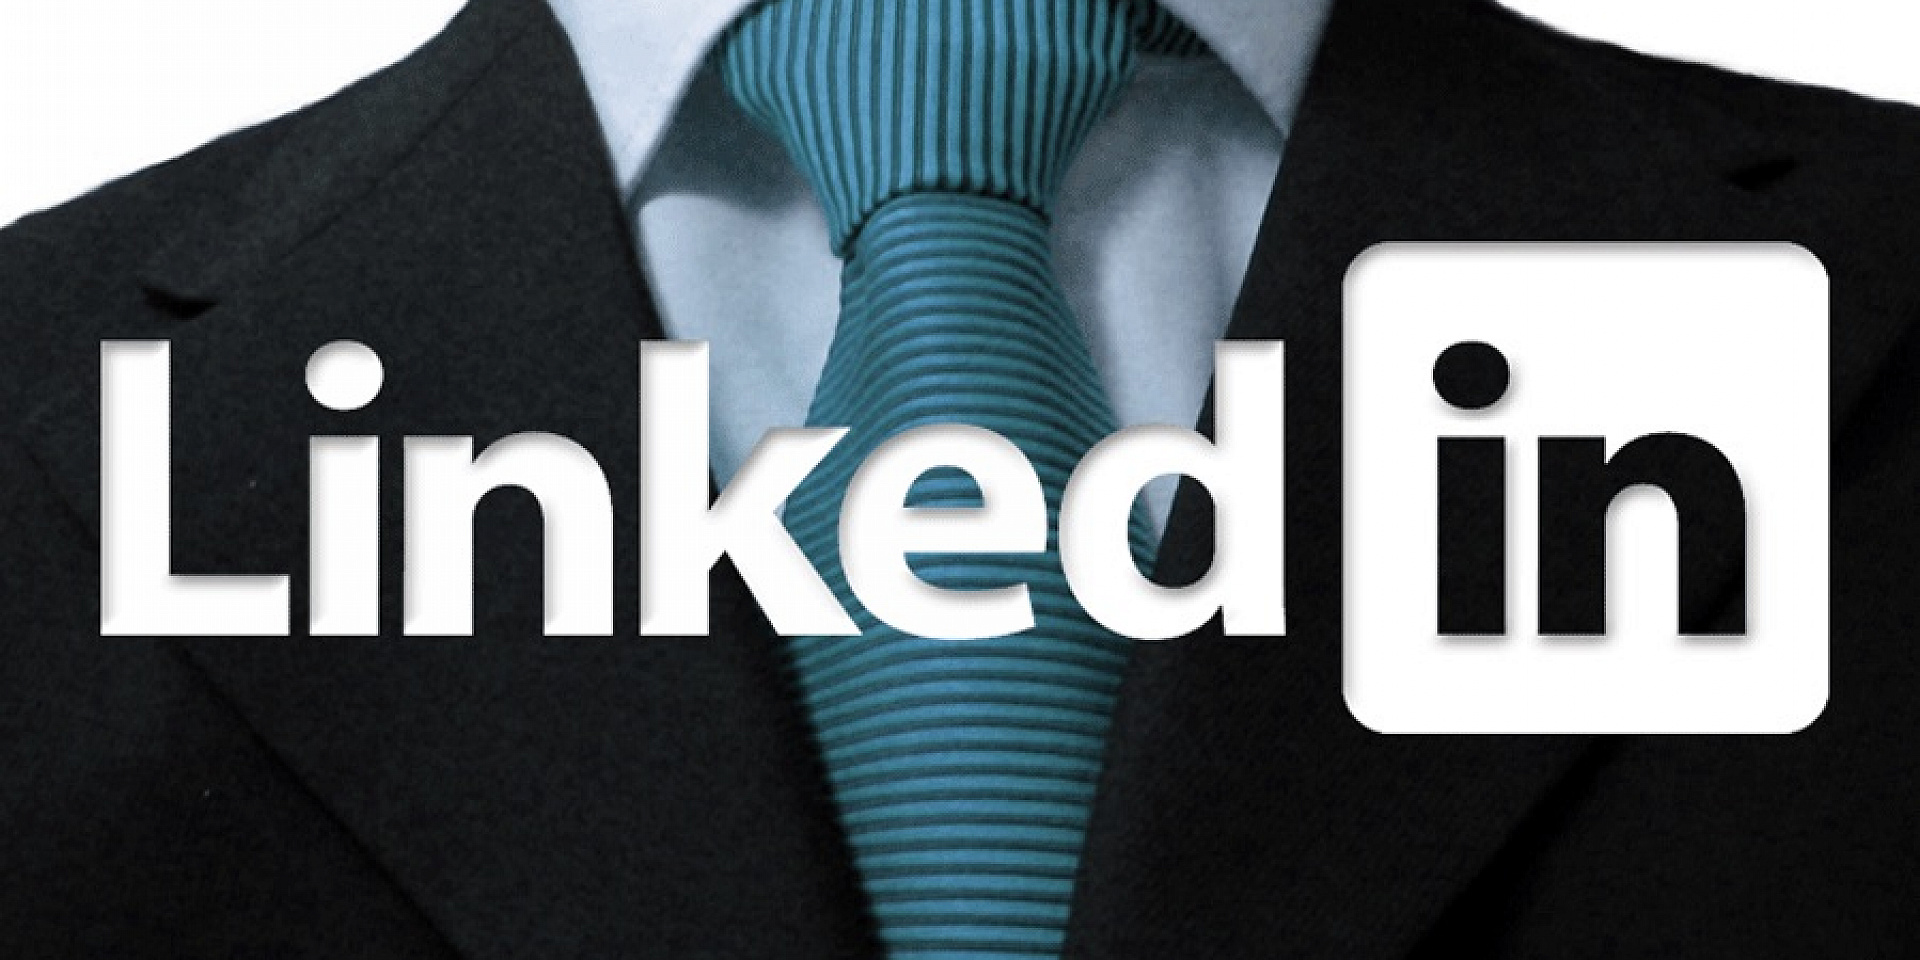 LinkedIn logo over a black suit.